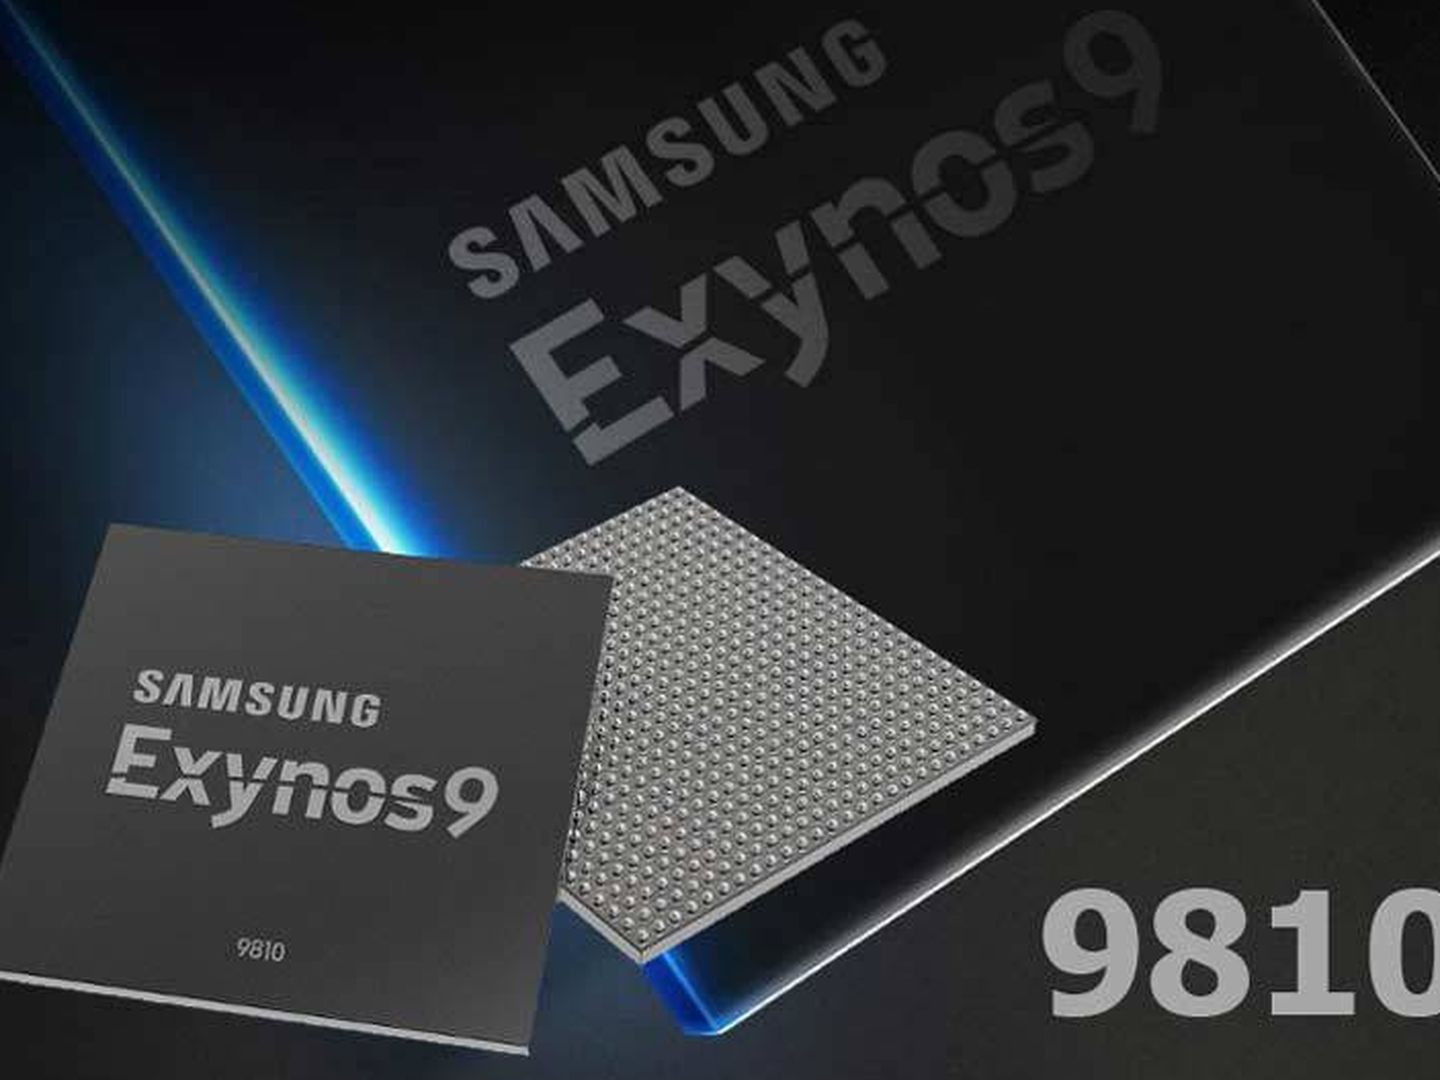 El Exynos 9810 será el motor de este teléfono. (Samsung)